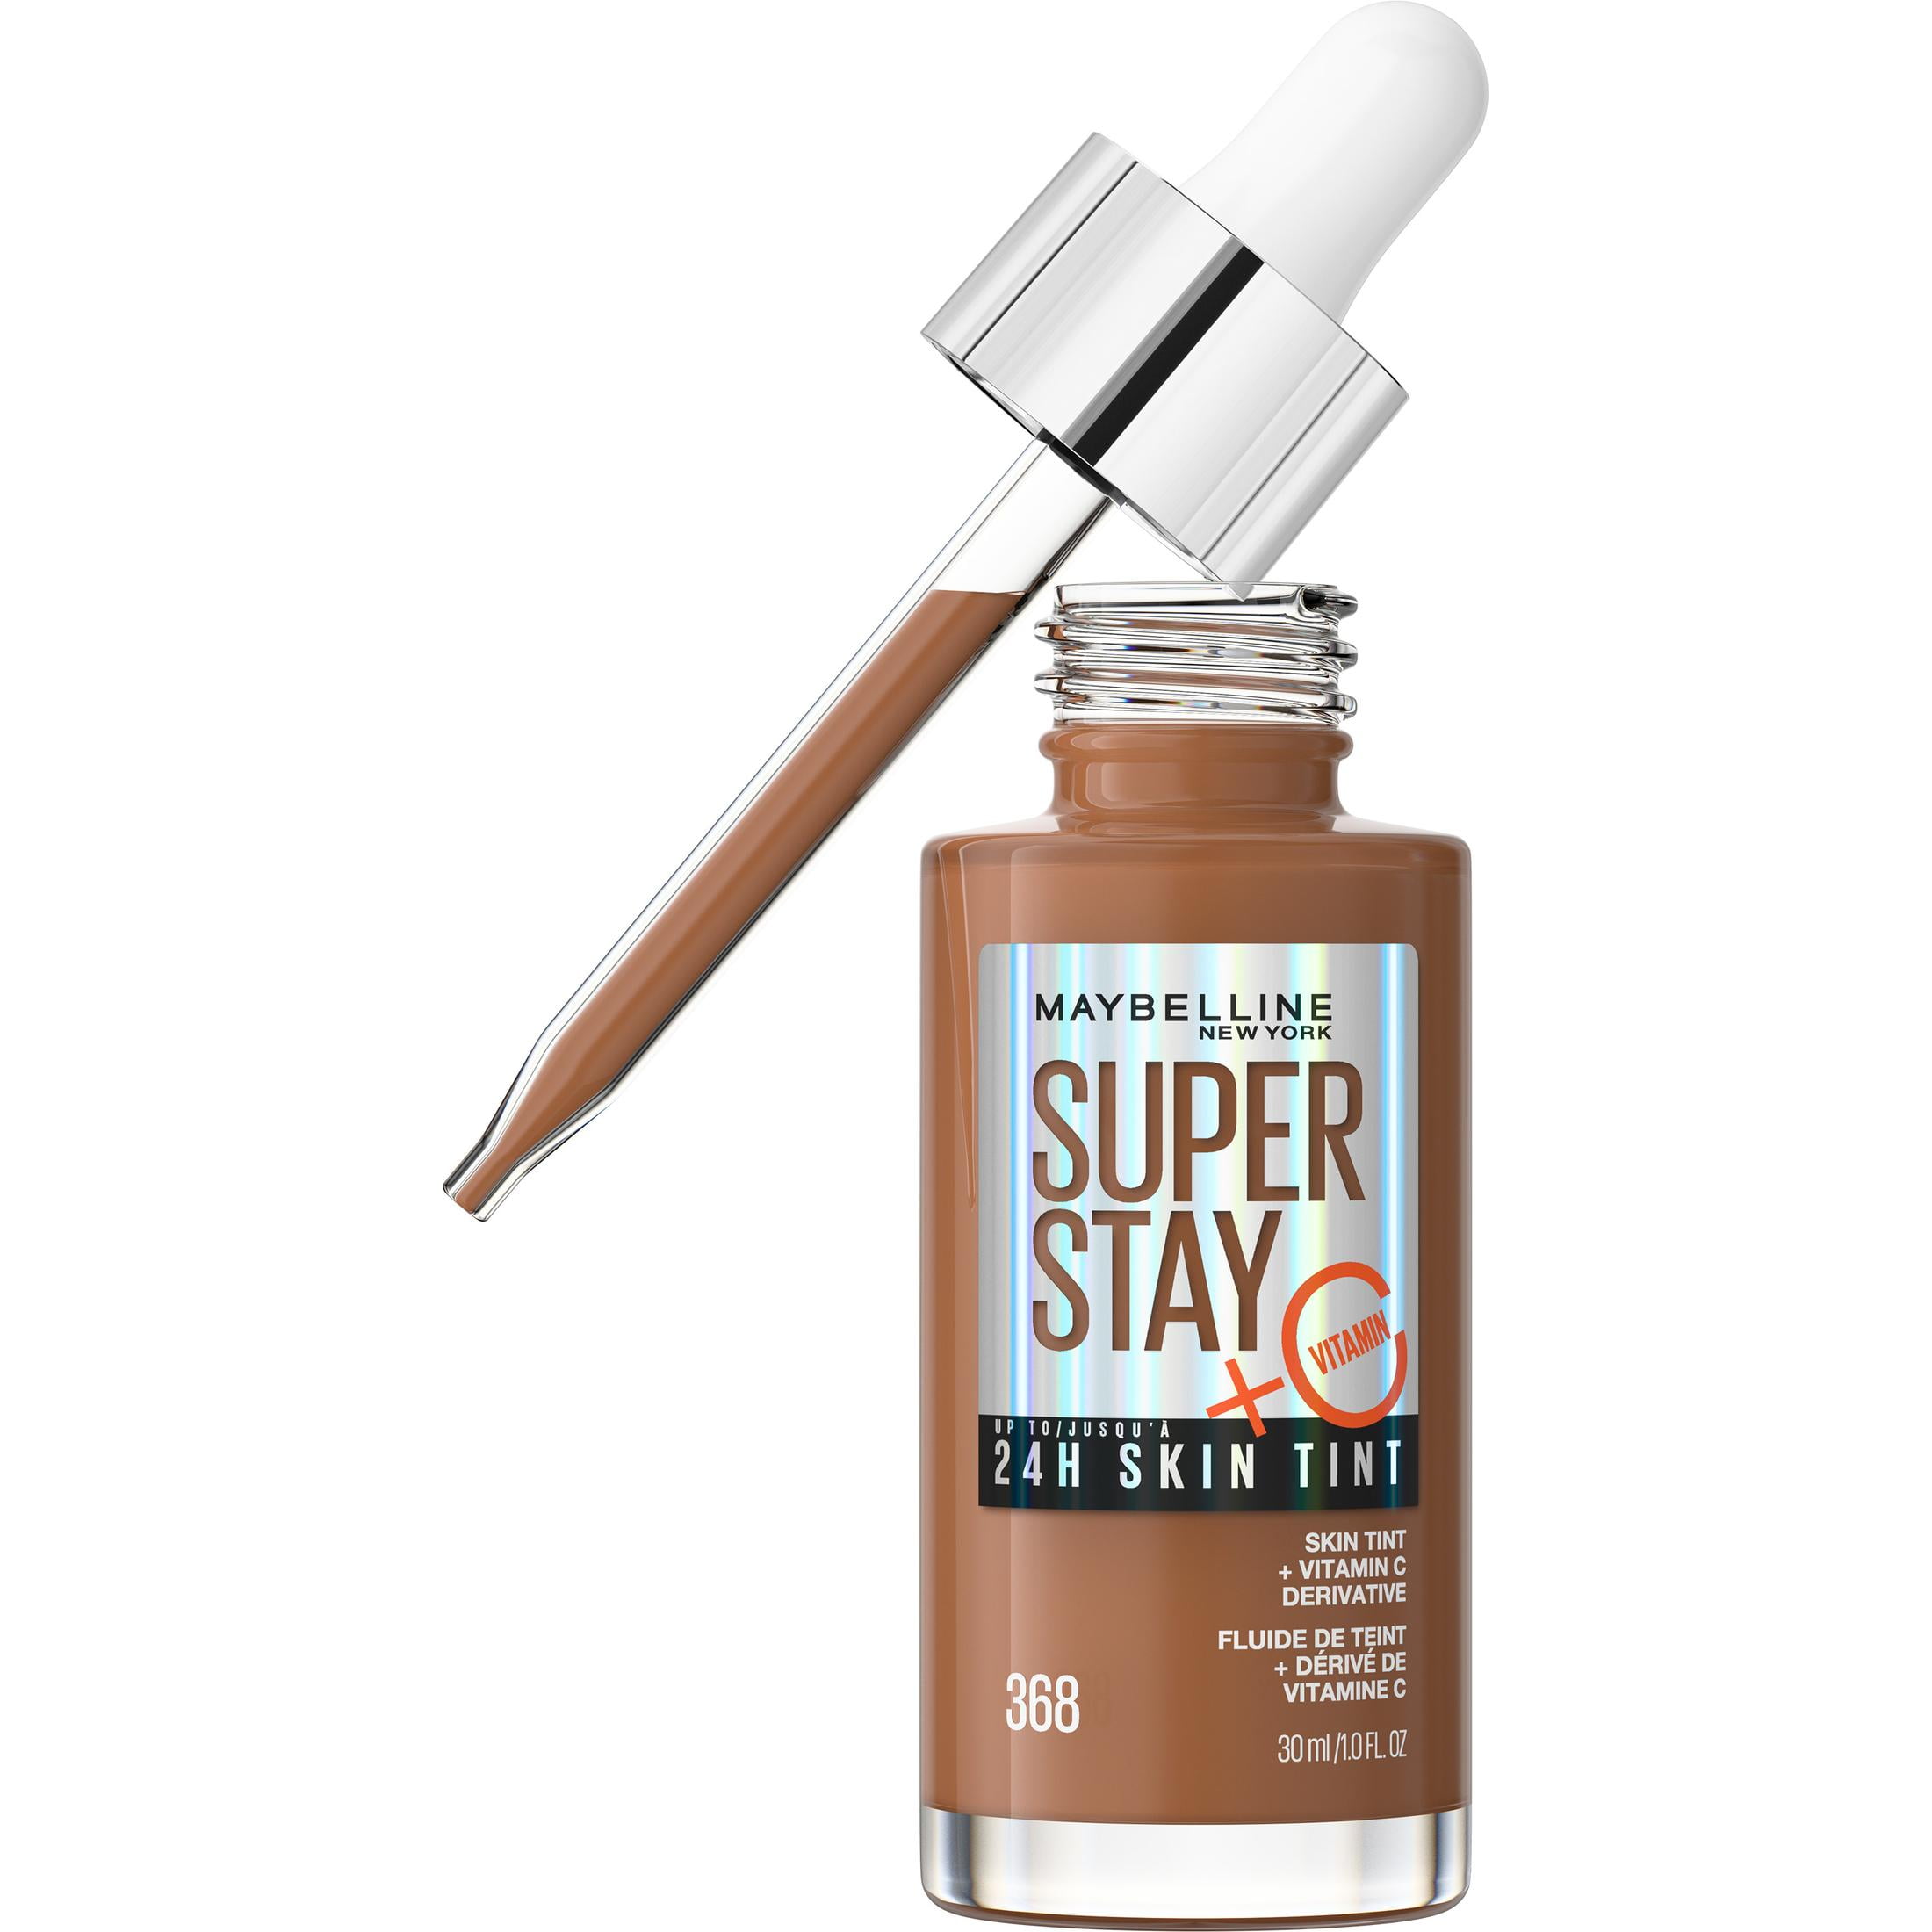 Stay Super Maybelline Un Ink Lipstick, Matte Liquid nude Driver